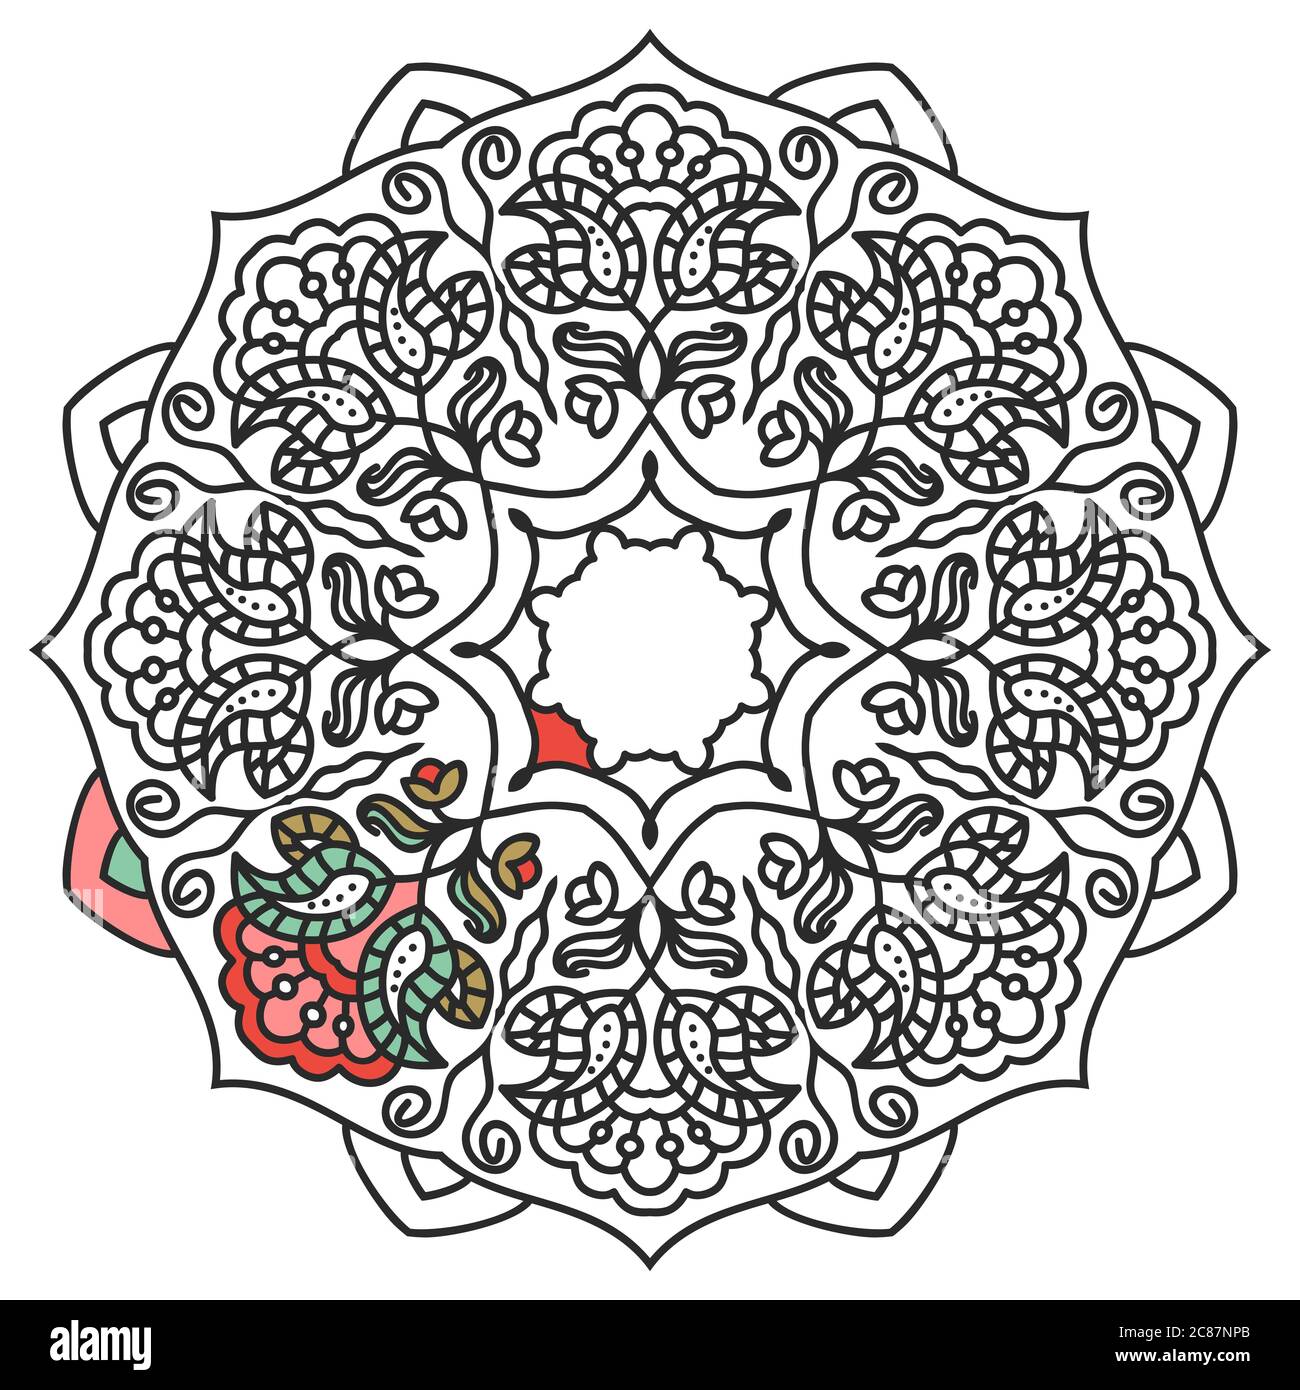 Handgezeichnetes Mandala mit Blumenmuster. Malbuch Seite. Anti-Stress-Therapie-Muster. Vektor abstrakt rund floralen Ornament in schwarz und weiß Stock Vektor